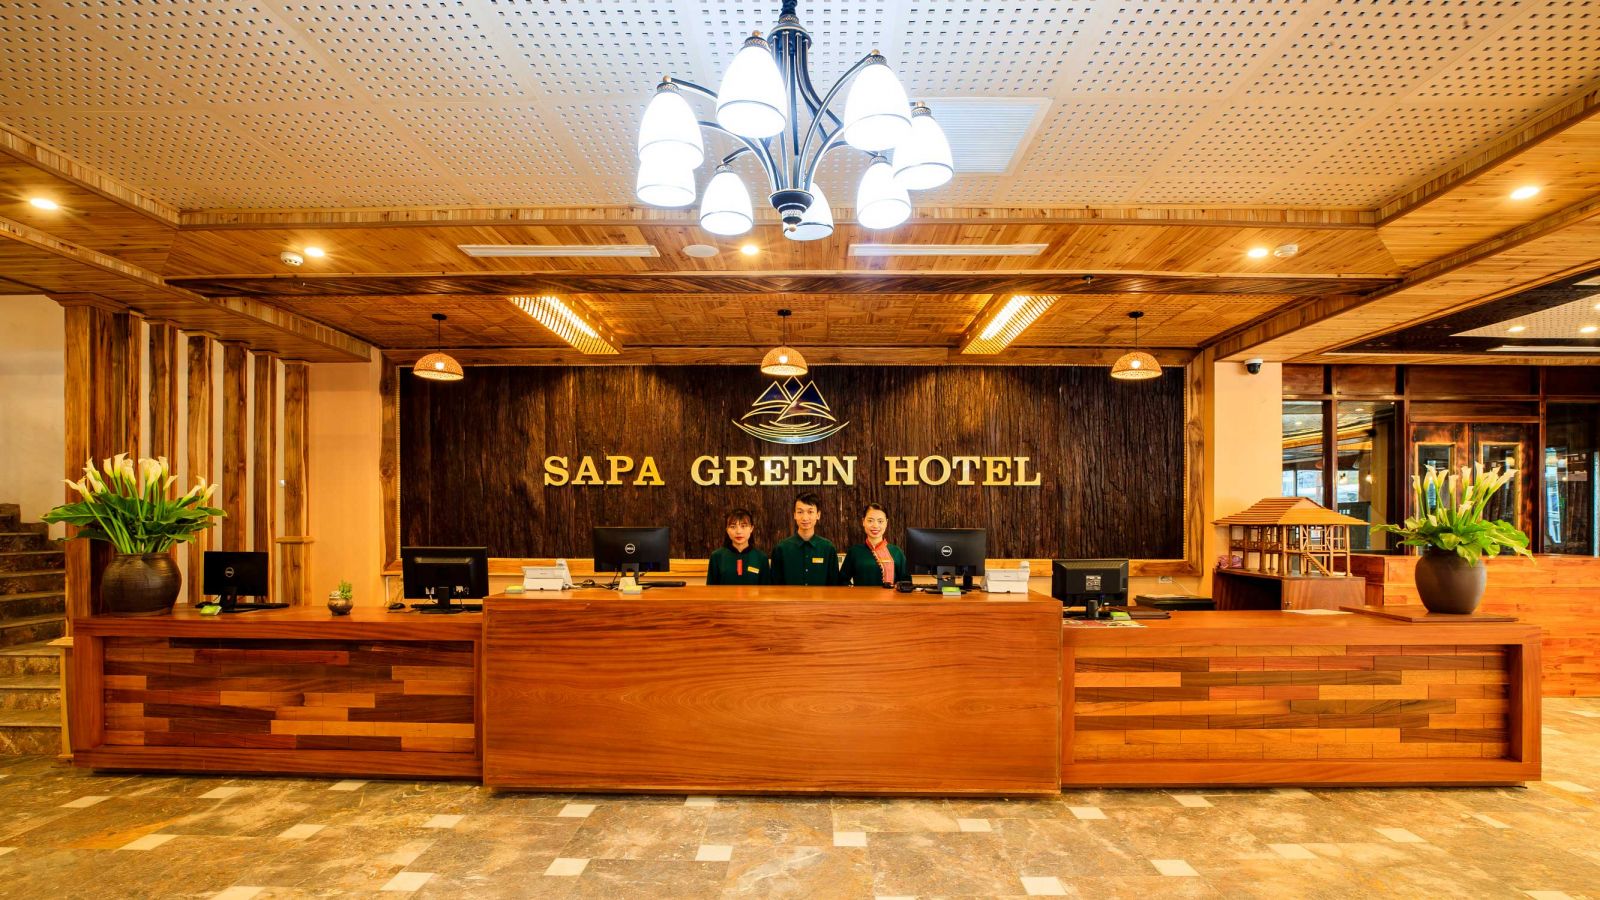 Từ một nhà nghỉ nhỏ quy mô 20 phòng, Sapa Green đã trở hành một thương hiệu khách sạn – spa – nhà hàng có tiếng tại Sa Pa